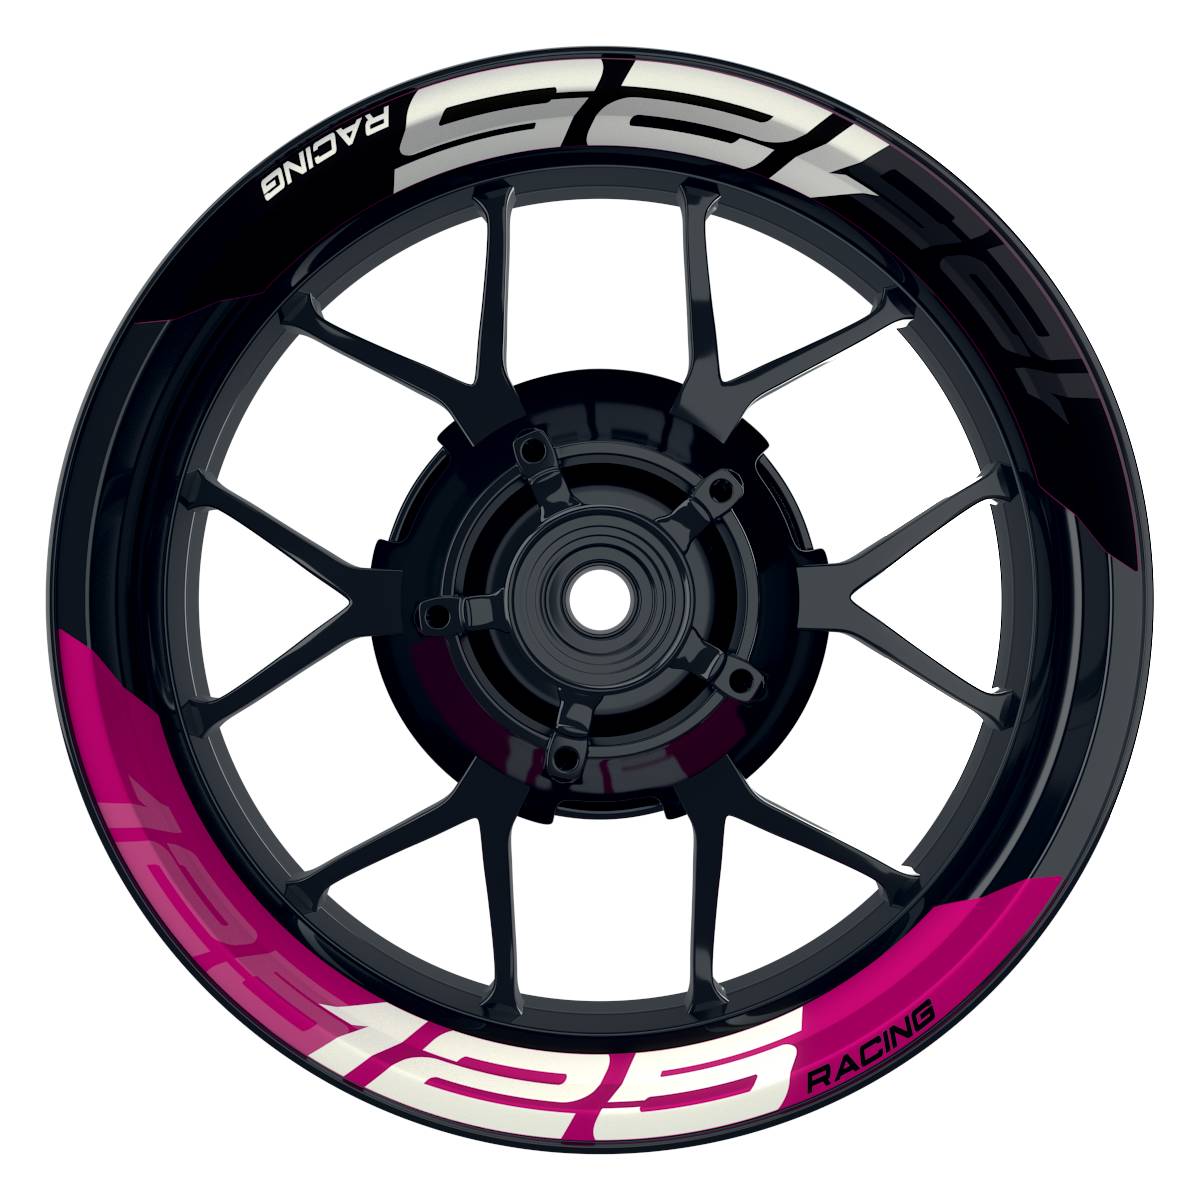 Wheelsticker Felgenaufkleber KTM Racing 125 halb halb V2 schwarz pink Frontansicht